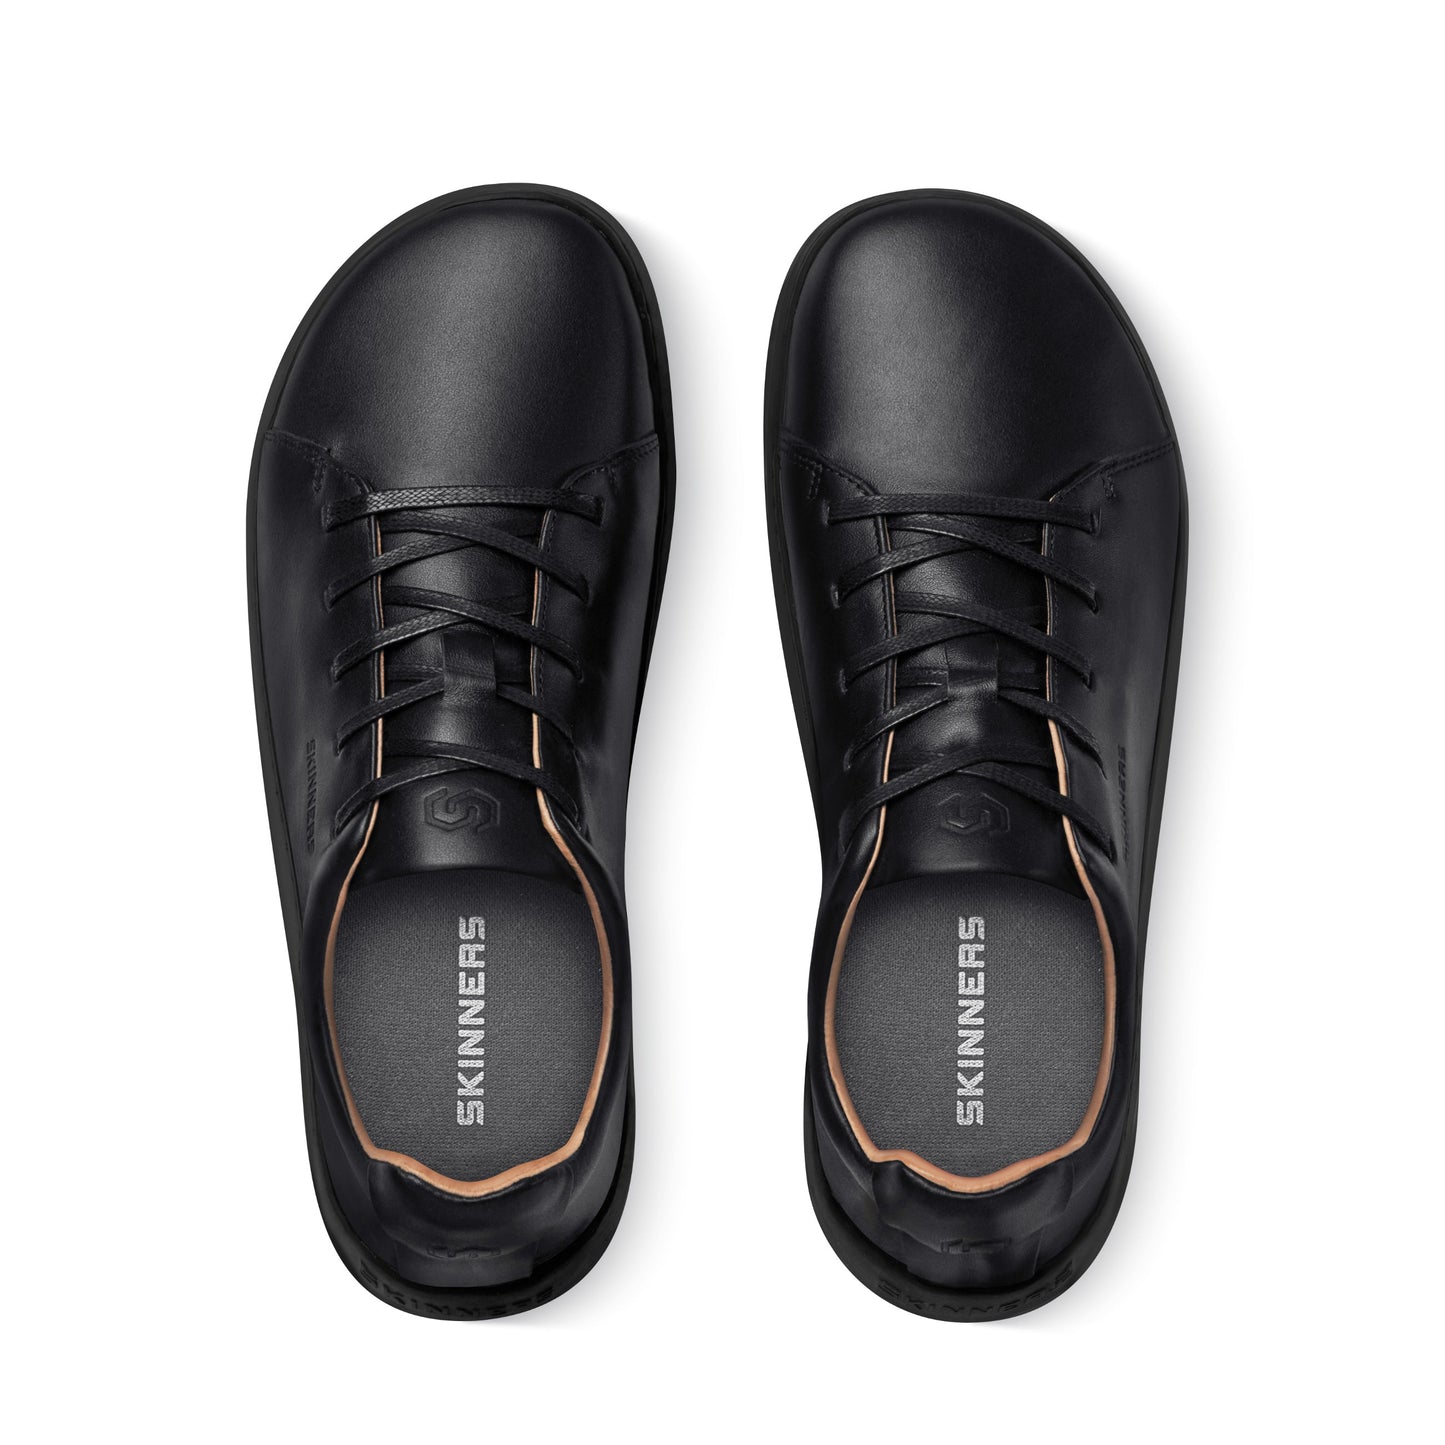 Mærkbare Walker barfods sneakers til kvinder og mænd i farven black / black, top